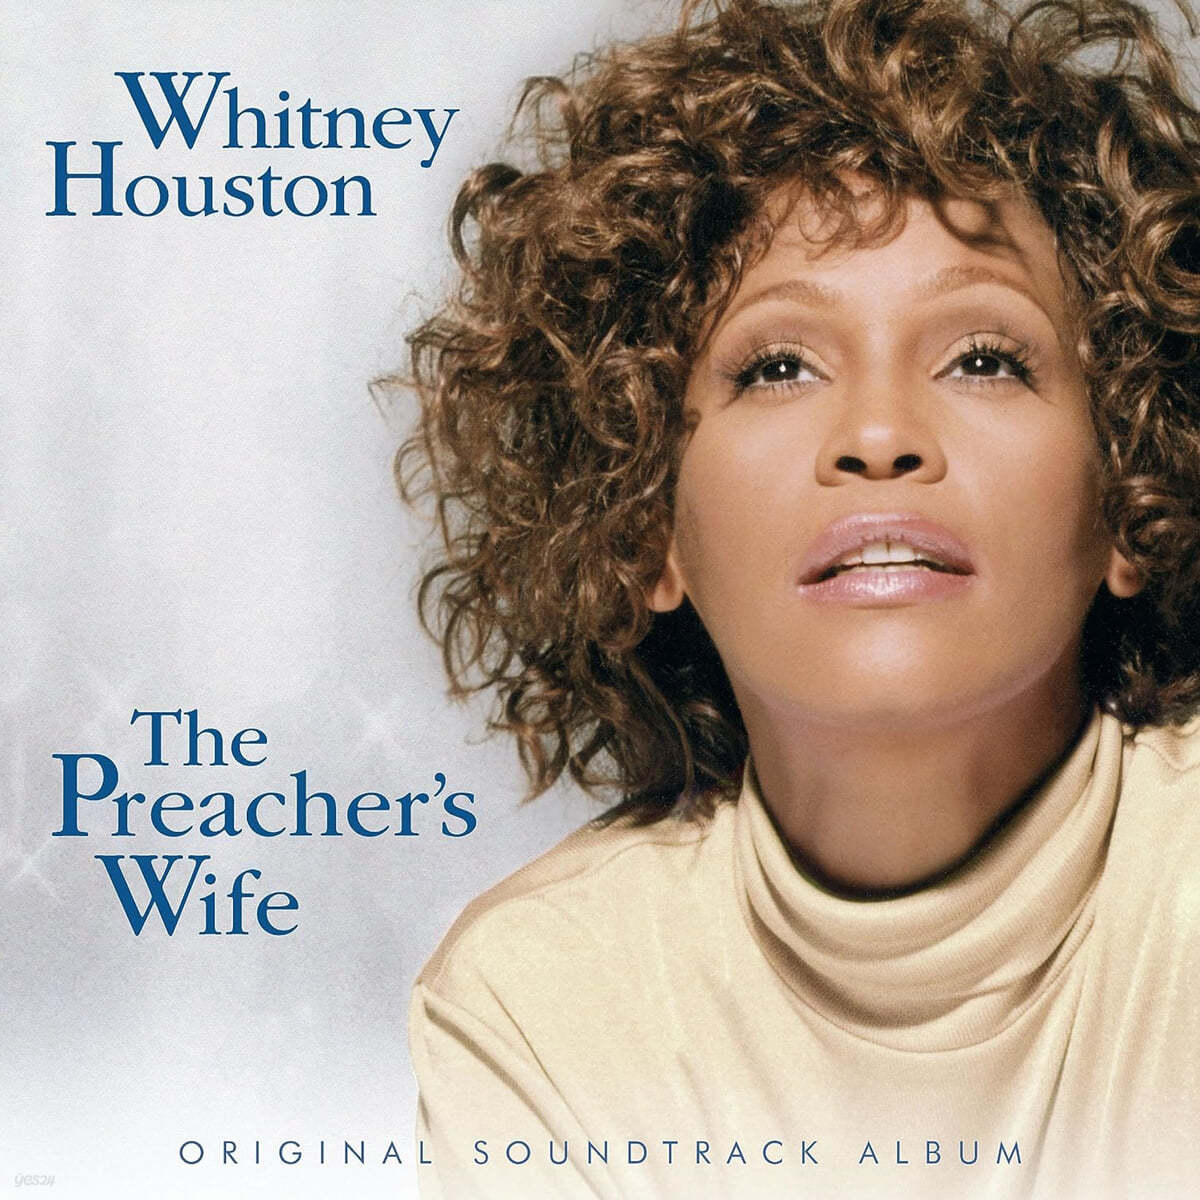 프리쳐스 와이프 영화음악 (The Preacher's Wife OST by Whitney Houston) [옐로우 컬러 2LP]